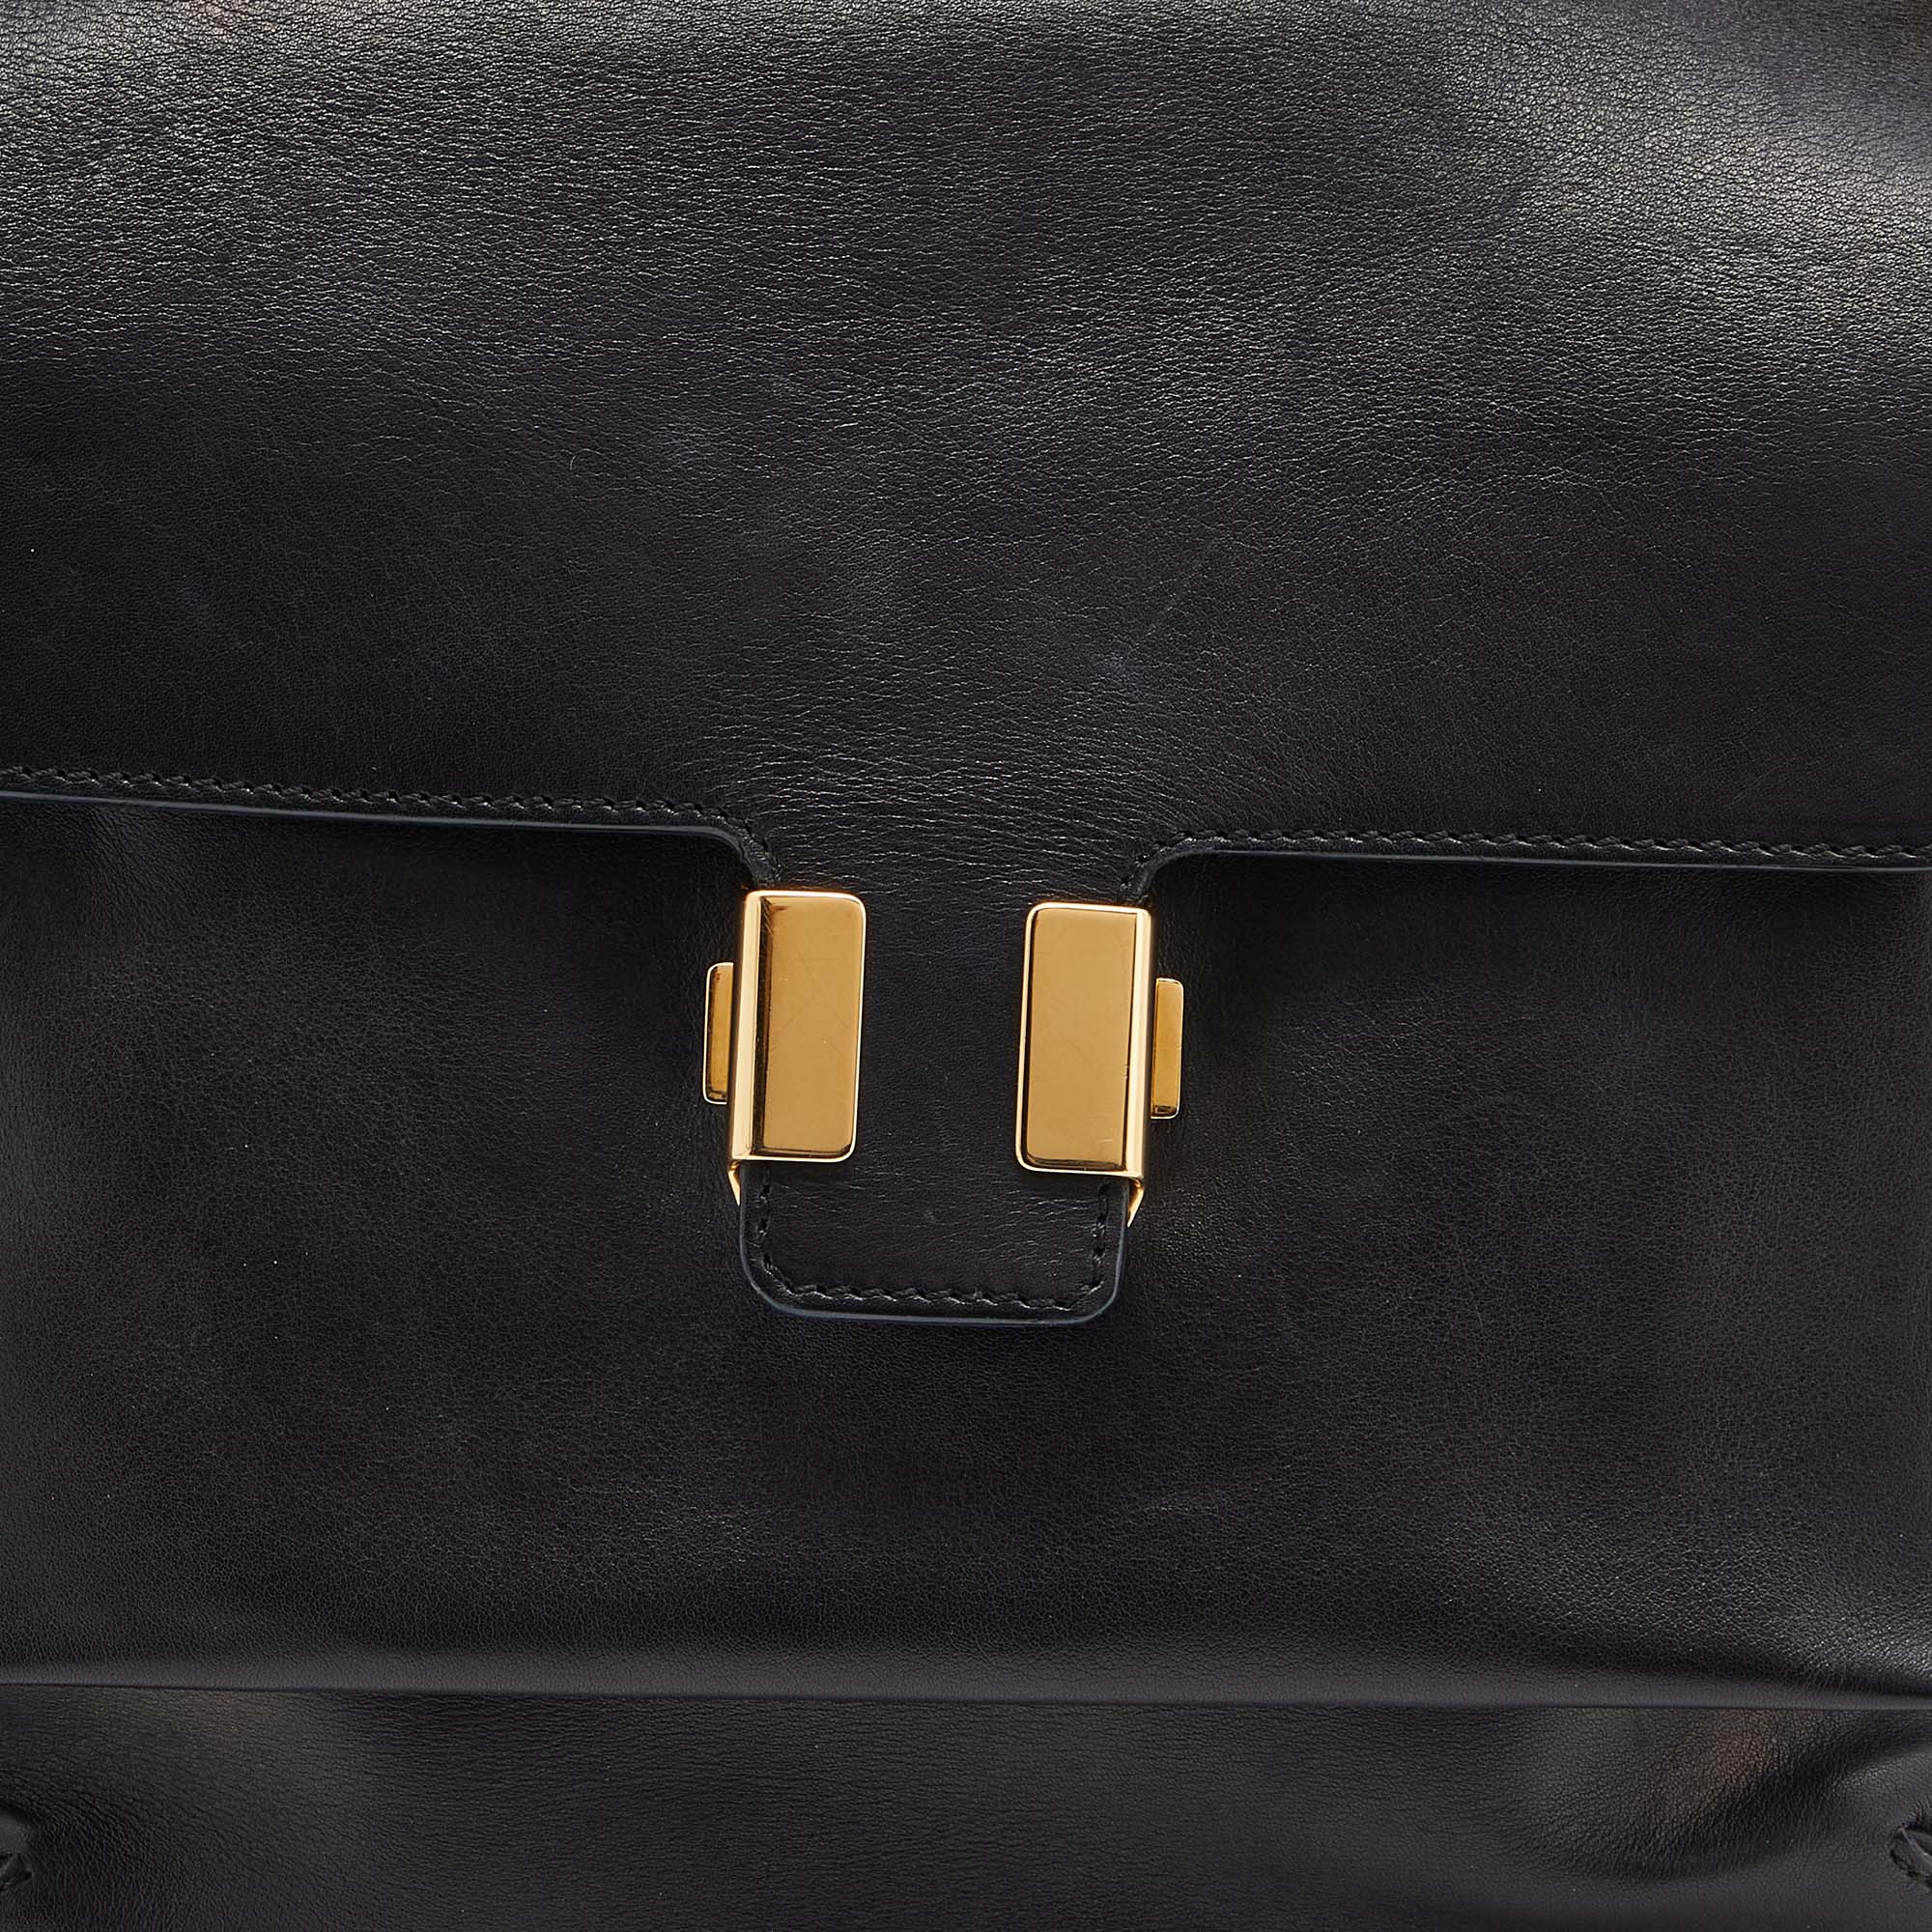 Chloe Black Leather Flap Top Handle Bag